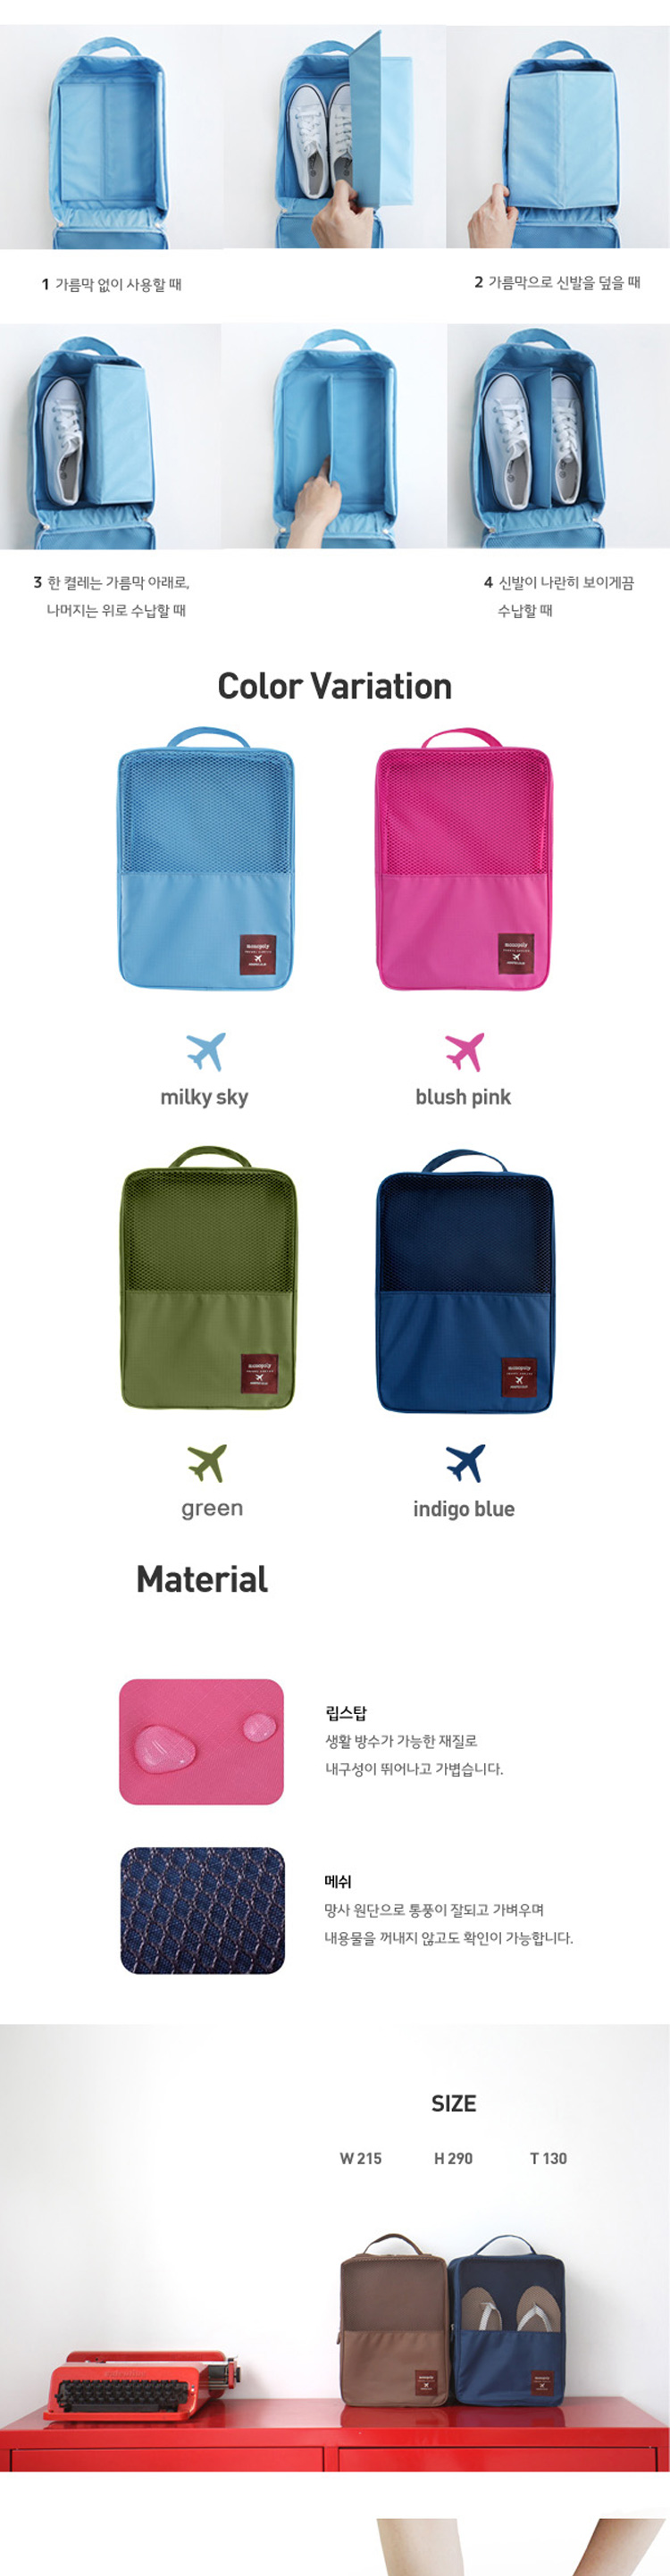 Travel bag, bag, shoe, shoe, bag, bag, bag, bag, bag, bag, bag, bag, bag, bag, bag, bag, bag, bag, bag, bag, bag, bag, shoe bag, two generation of shoe bag6